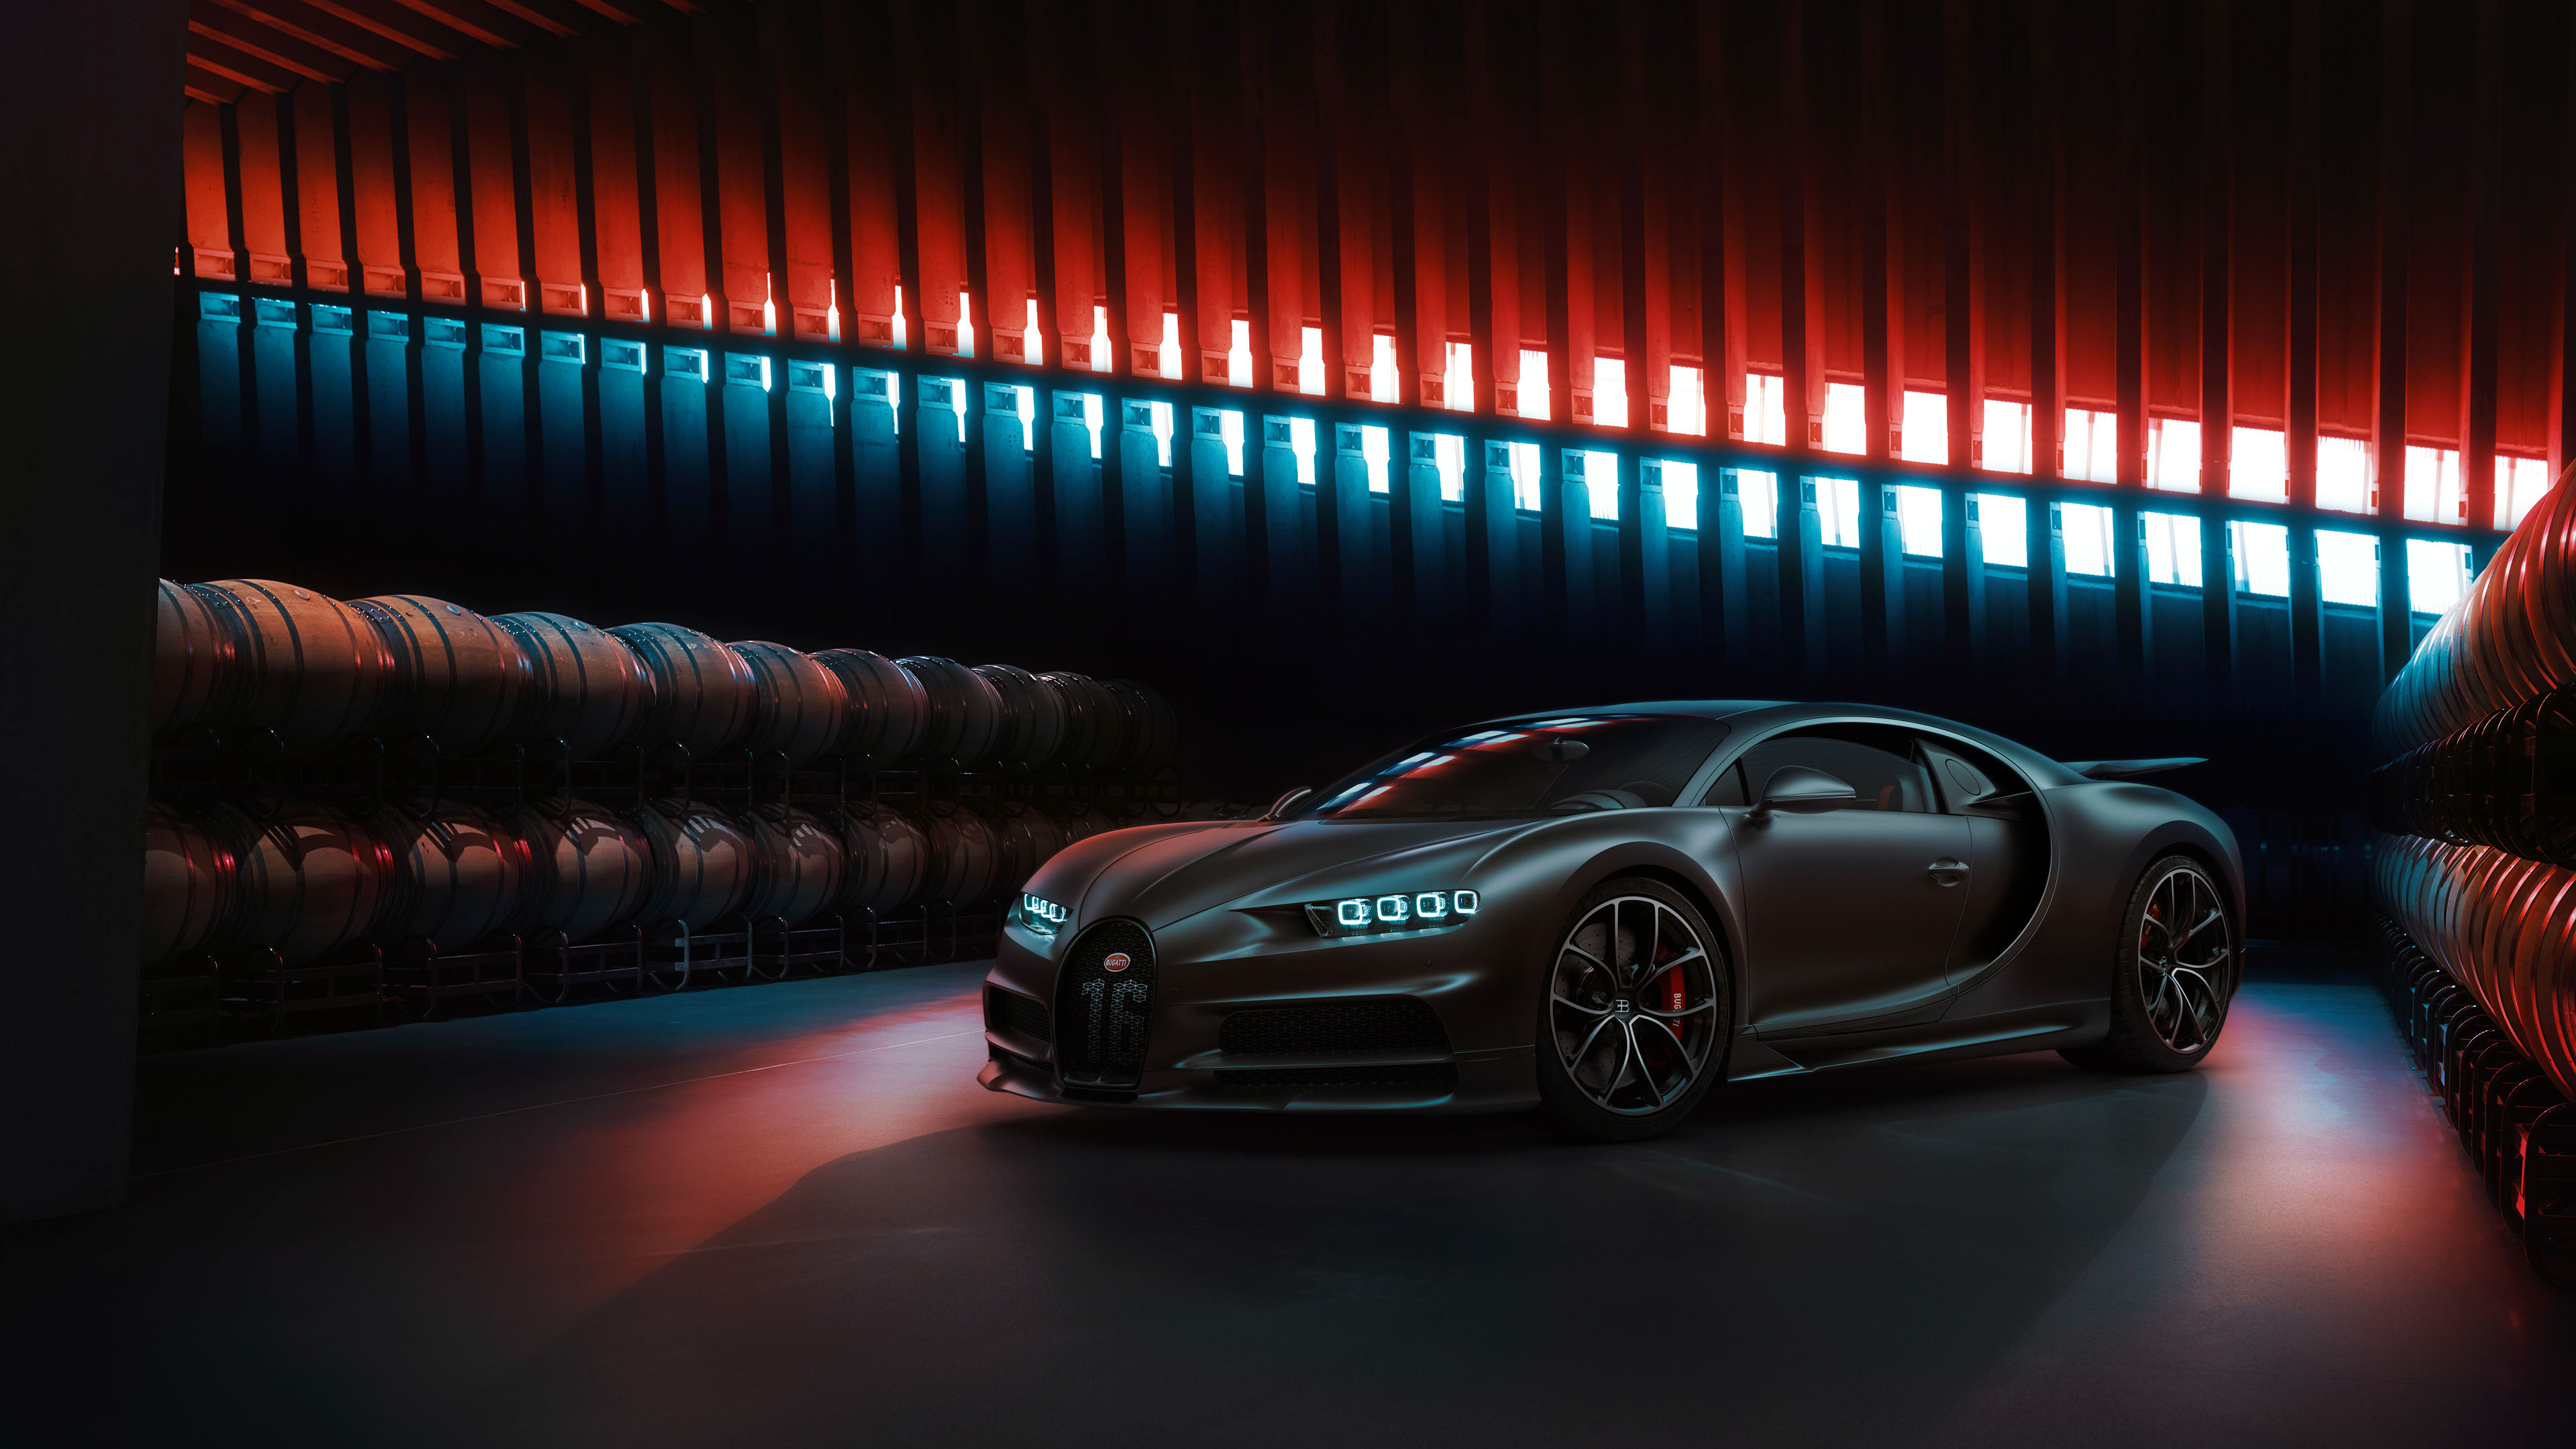 Black Bugatti Chiron 2020 Wallpaper In 3840x2160 Resolution